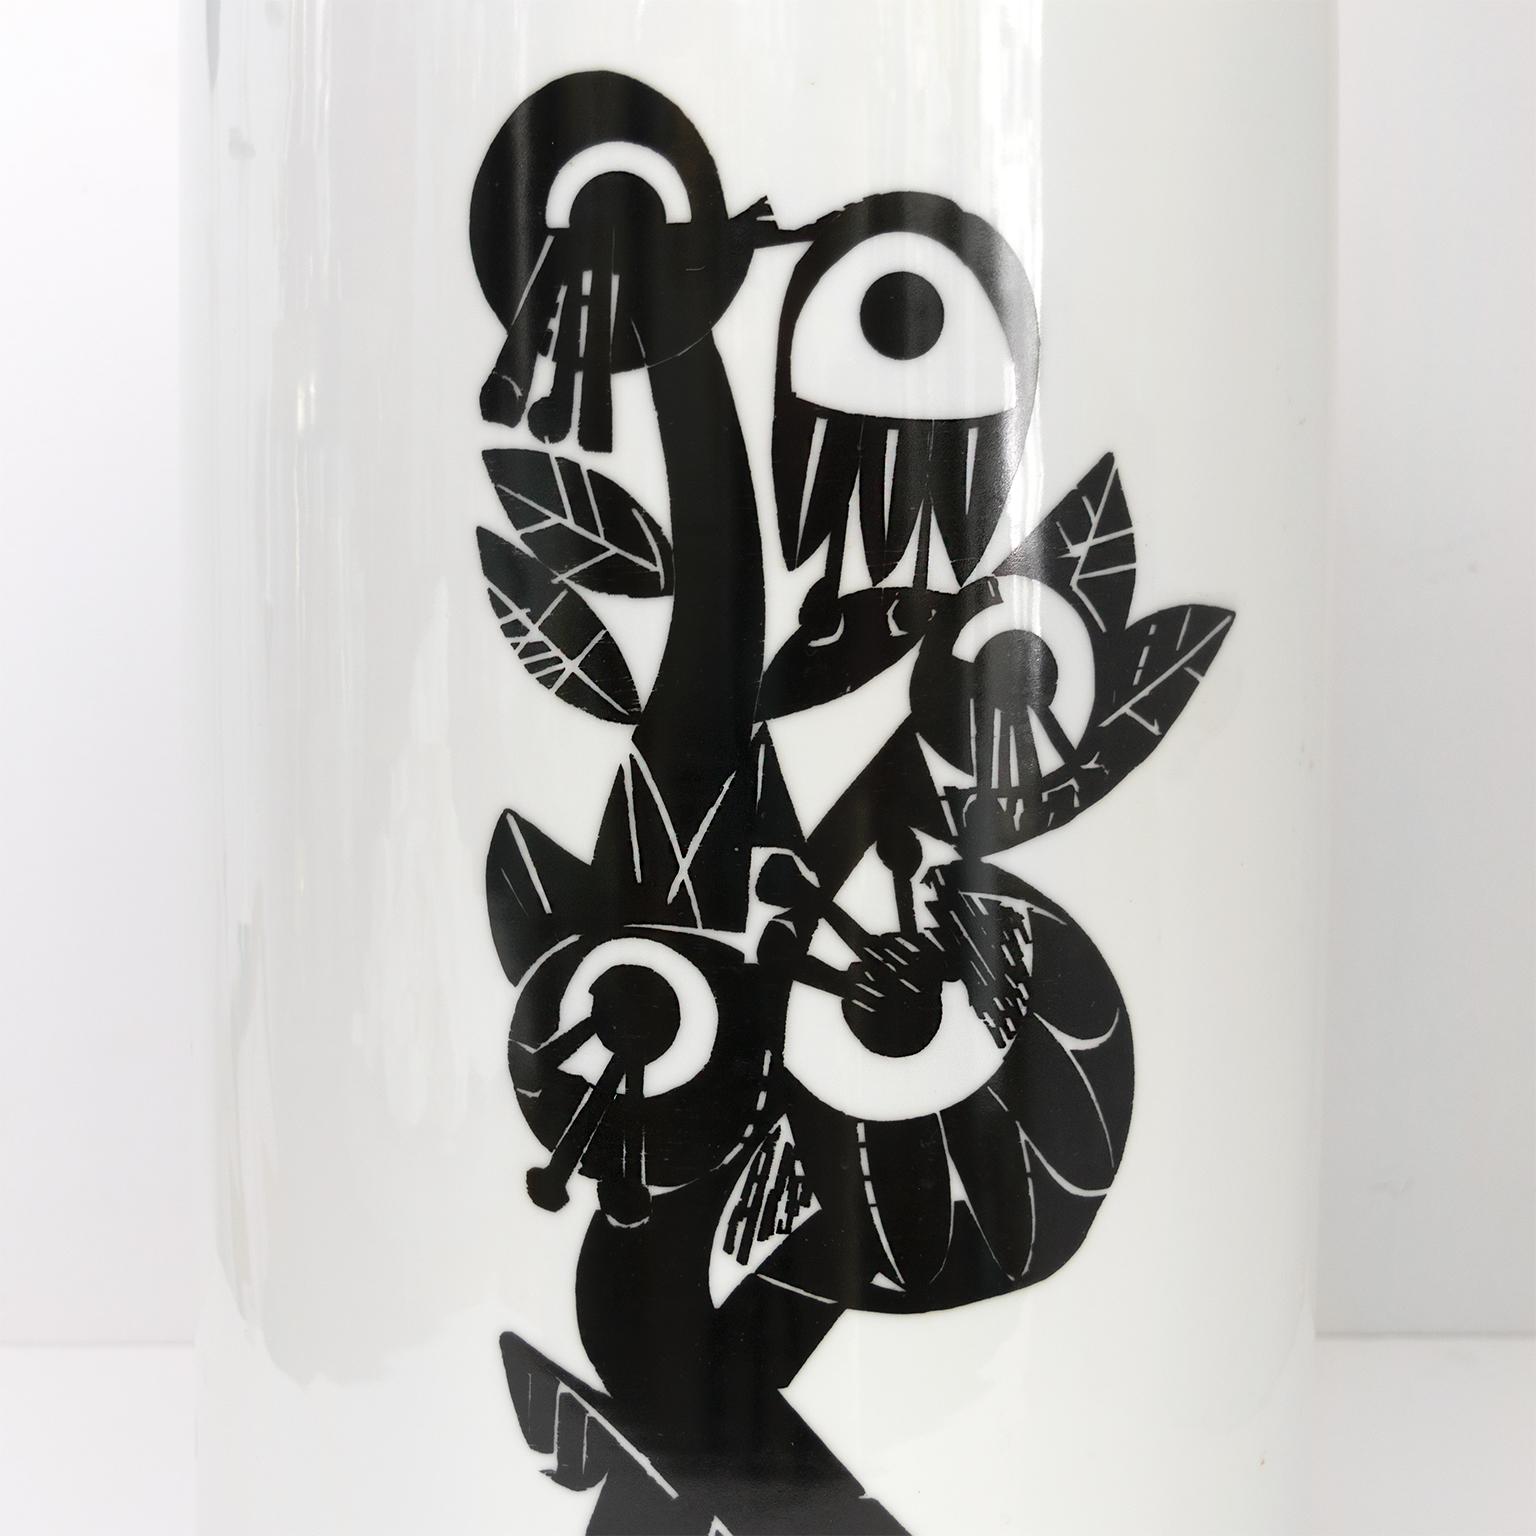 Glazed H&G Selb Heinrich Large Artistic Modernist Porcelain Vase with Figures For Sale